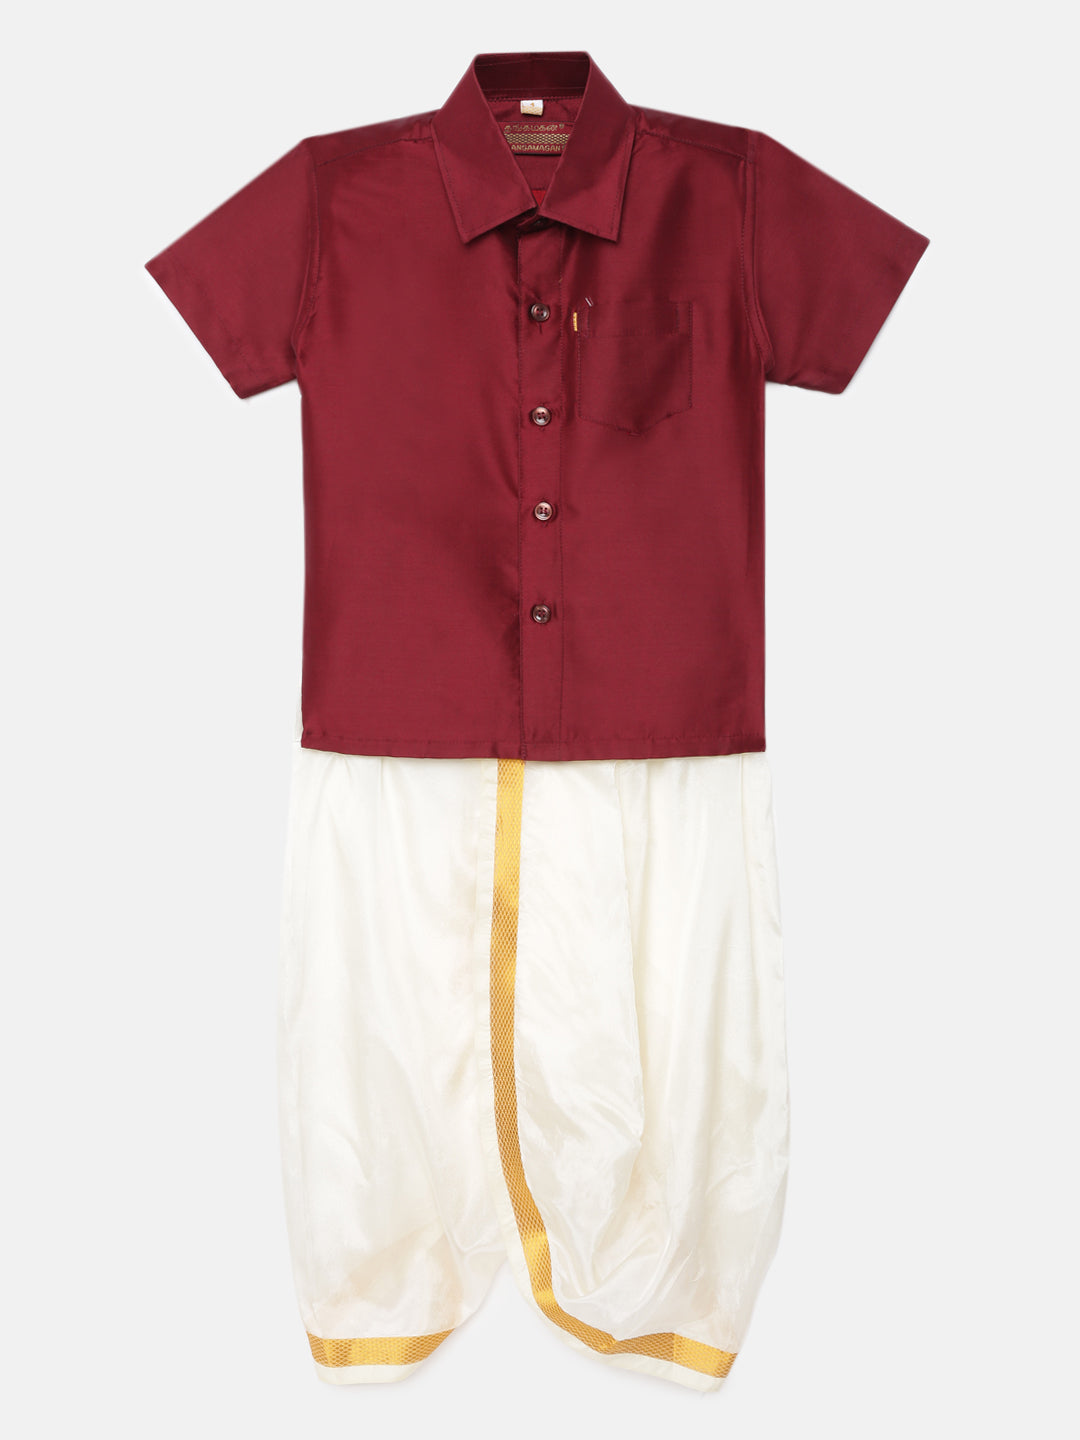 14. Boys Panjagajam & Shirt Set